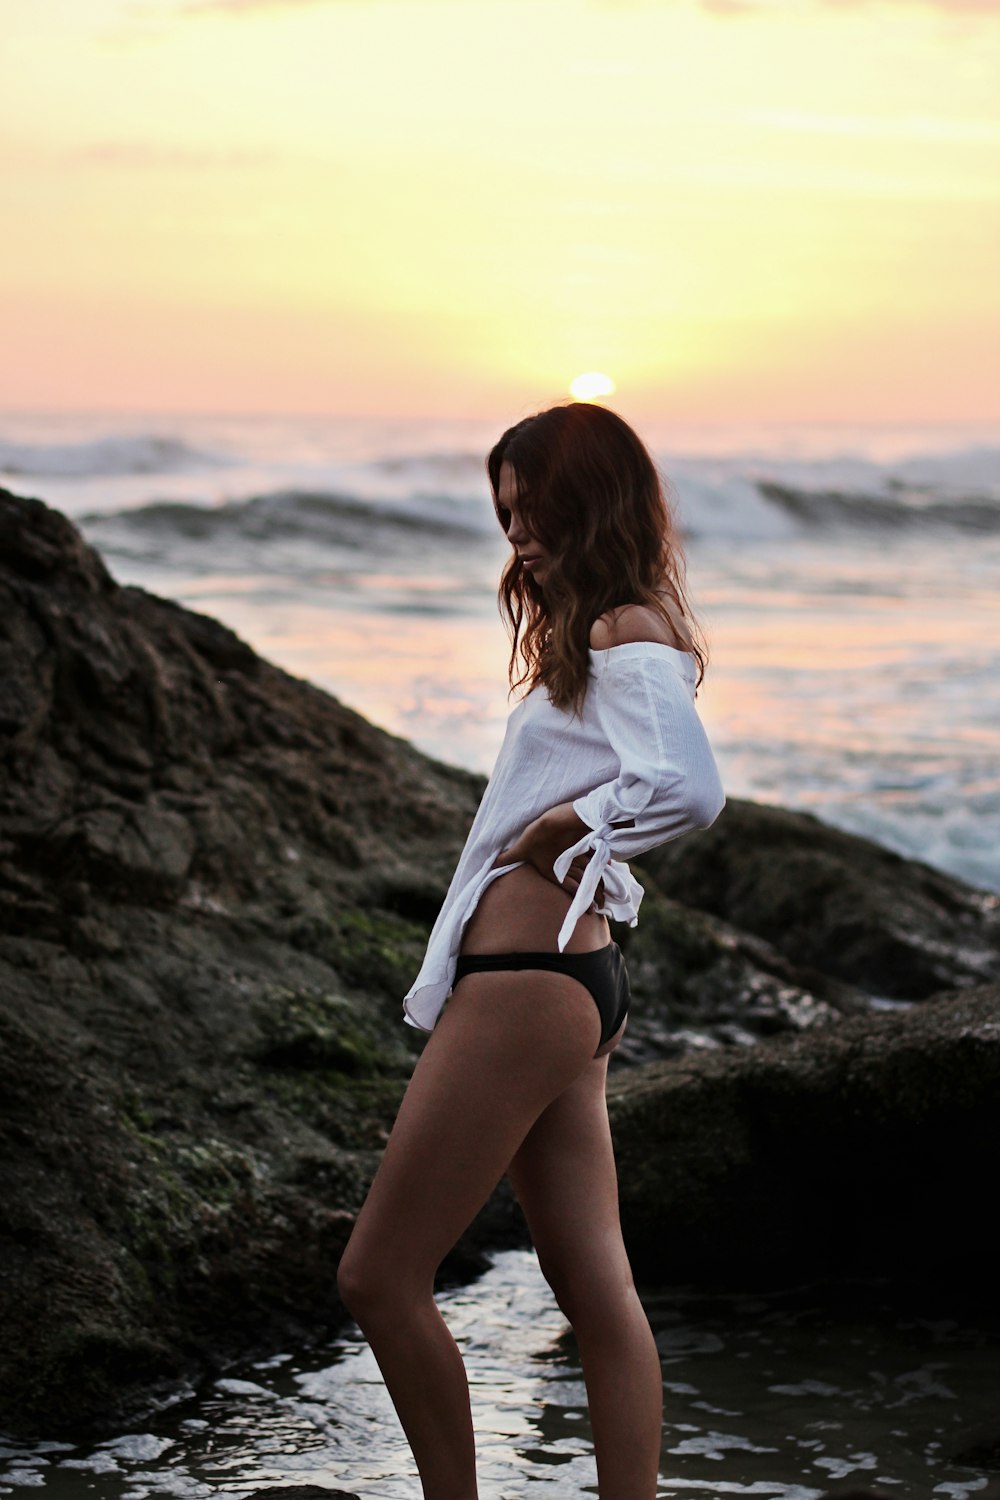 Femme portant une chemise blanche à épaules dénudées et une culotte noire debout sur le rivage avec un gros rocher pendant l’heure dorée